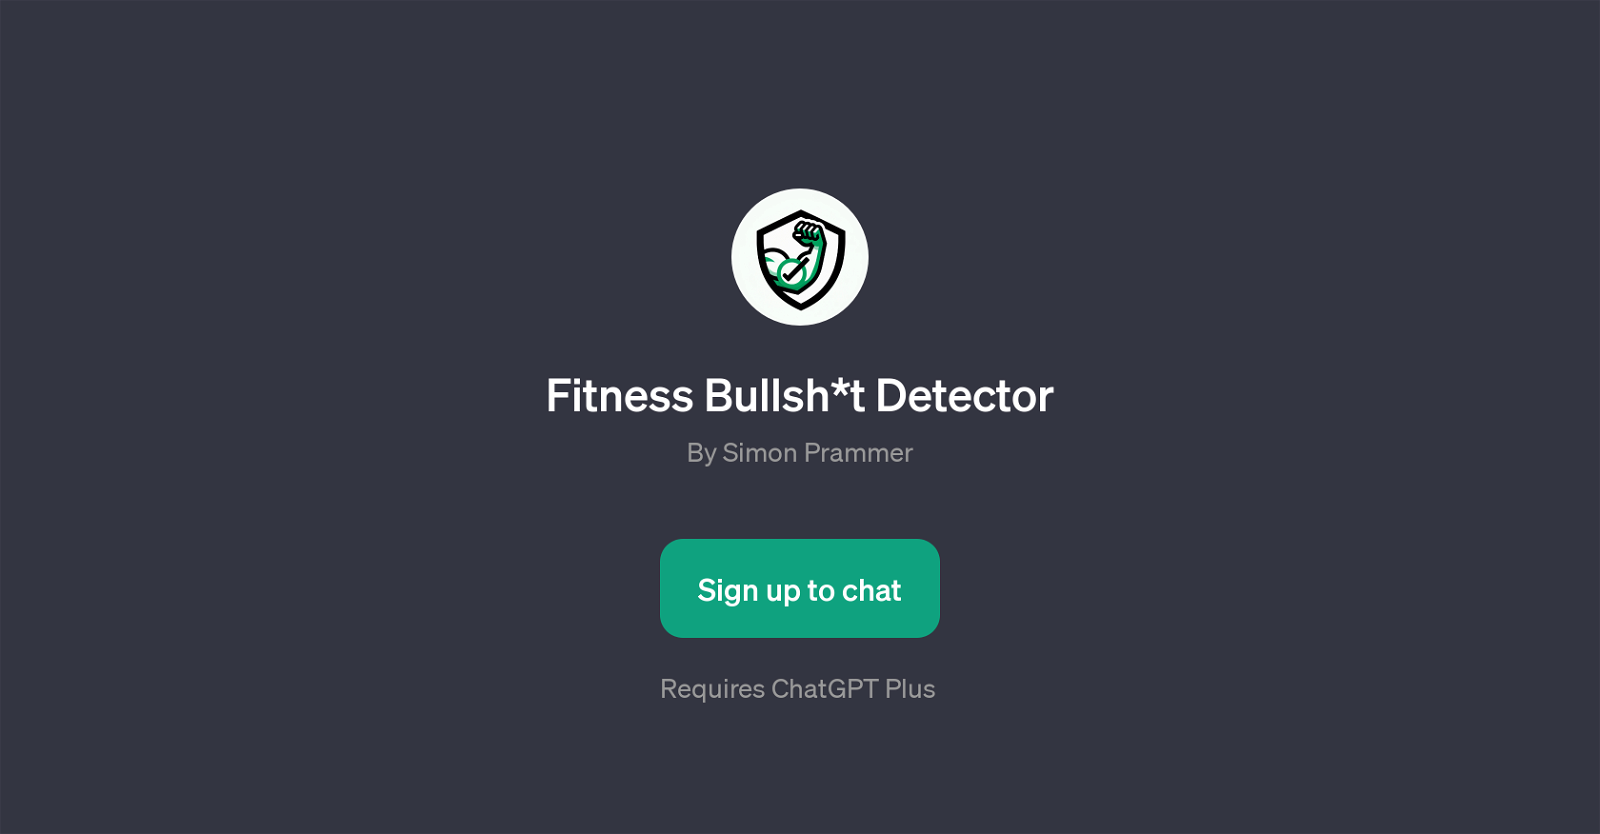 Fitness Bullsh*t Detector website